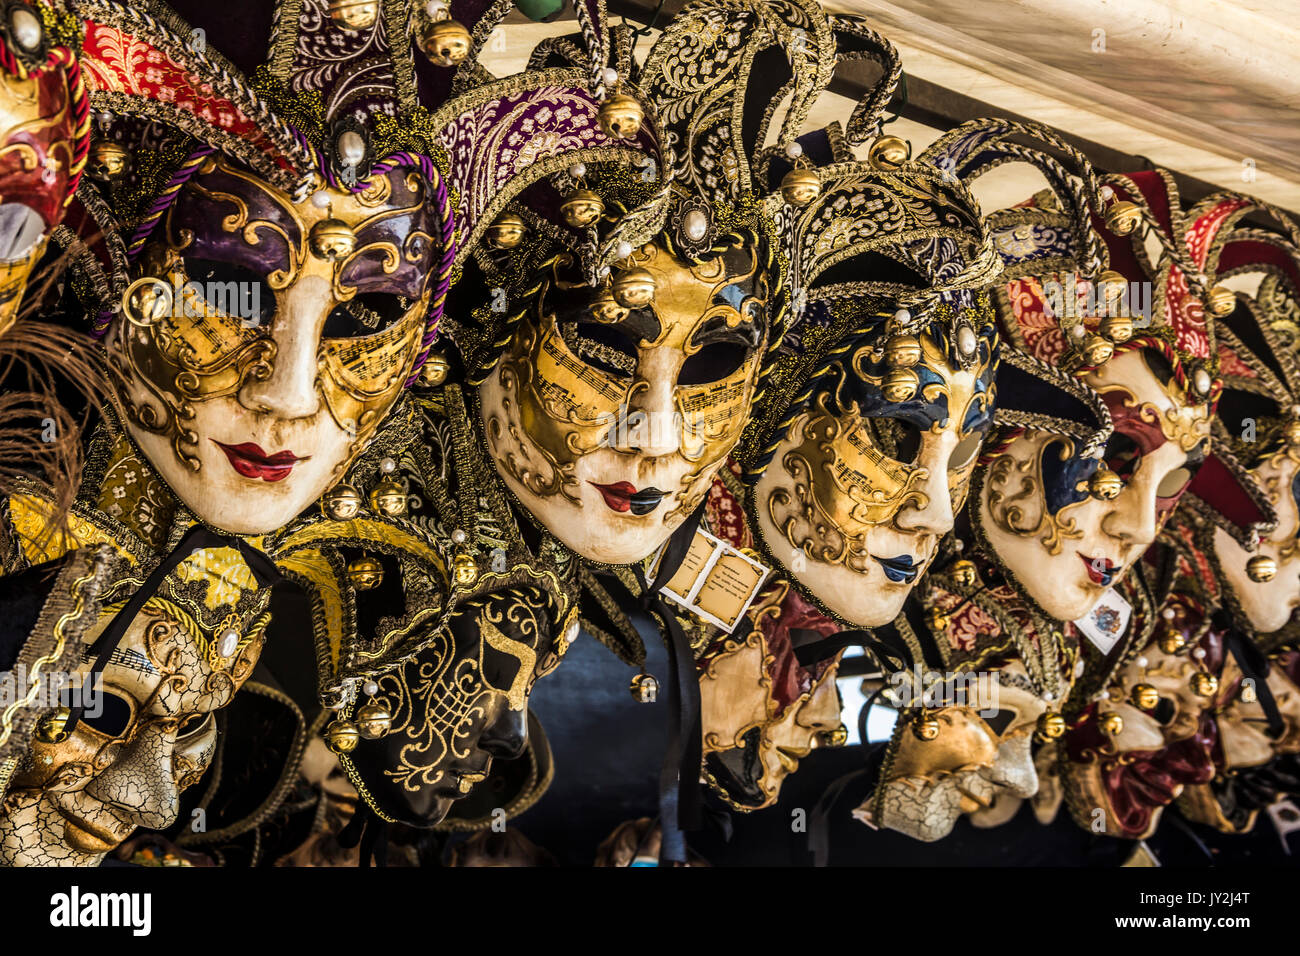 Vitrine richement décorées avec des masques de carnaval dans une rue de Venise Banque D'Images